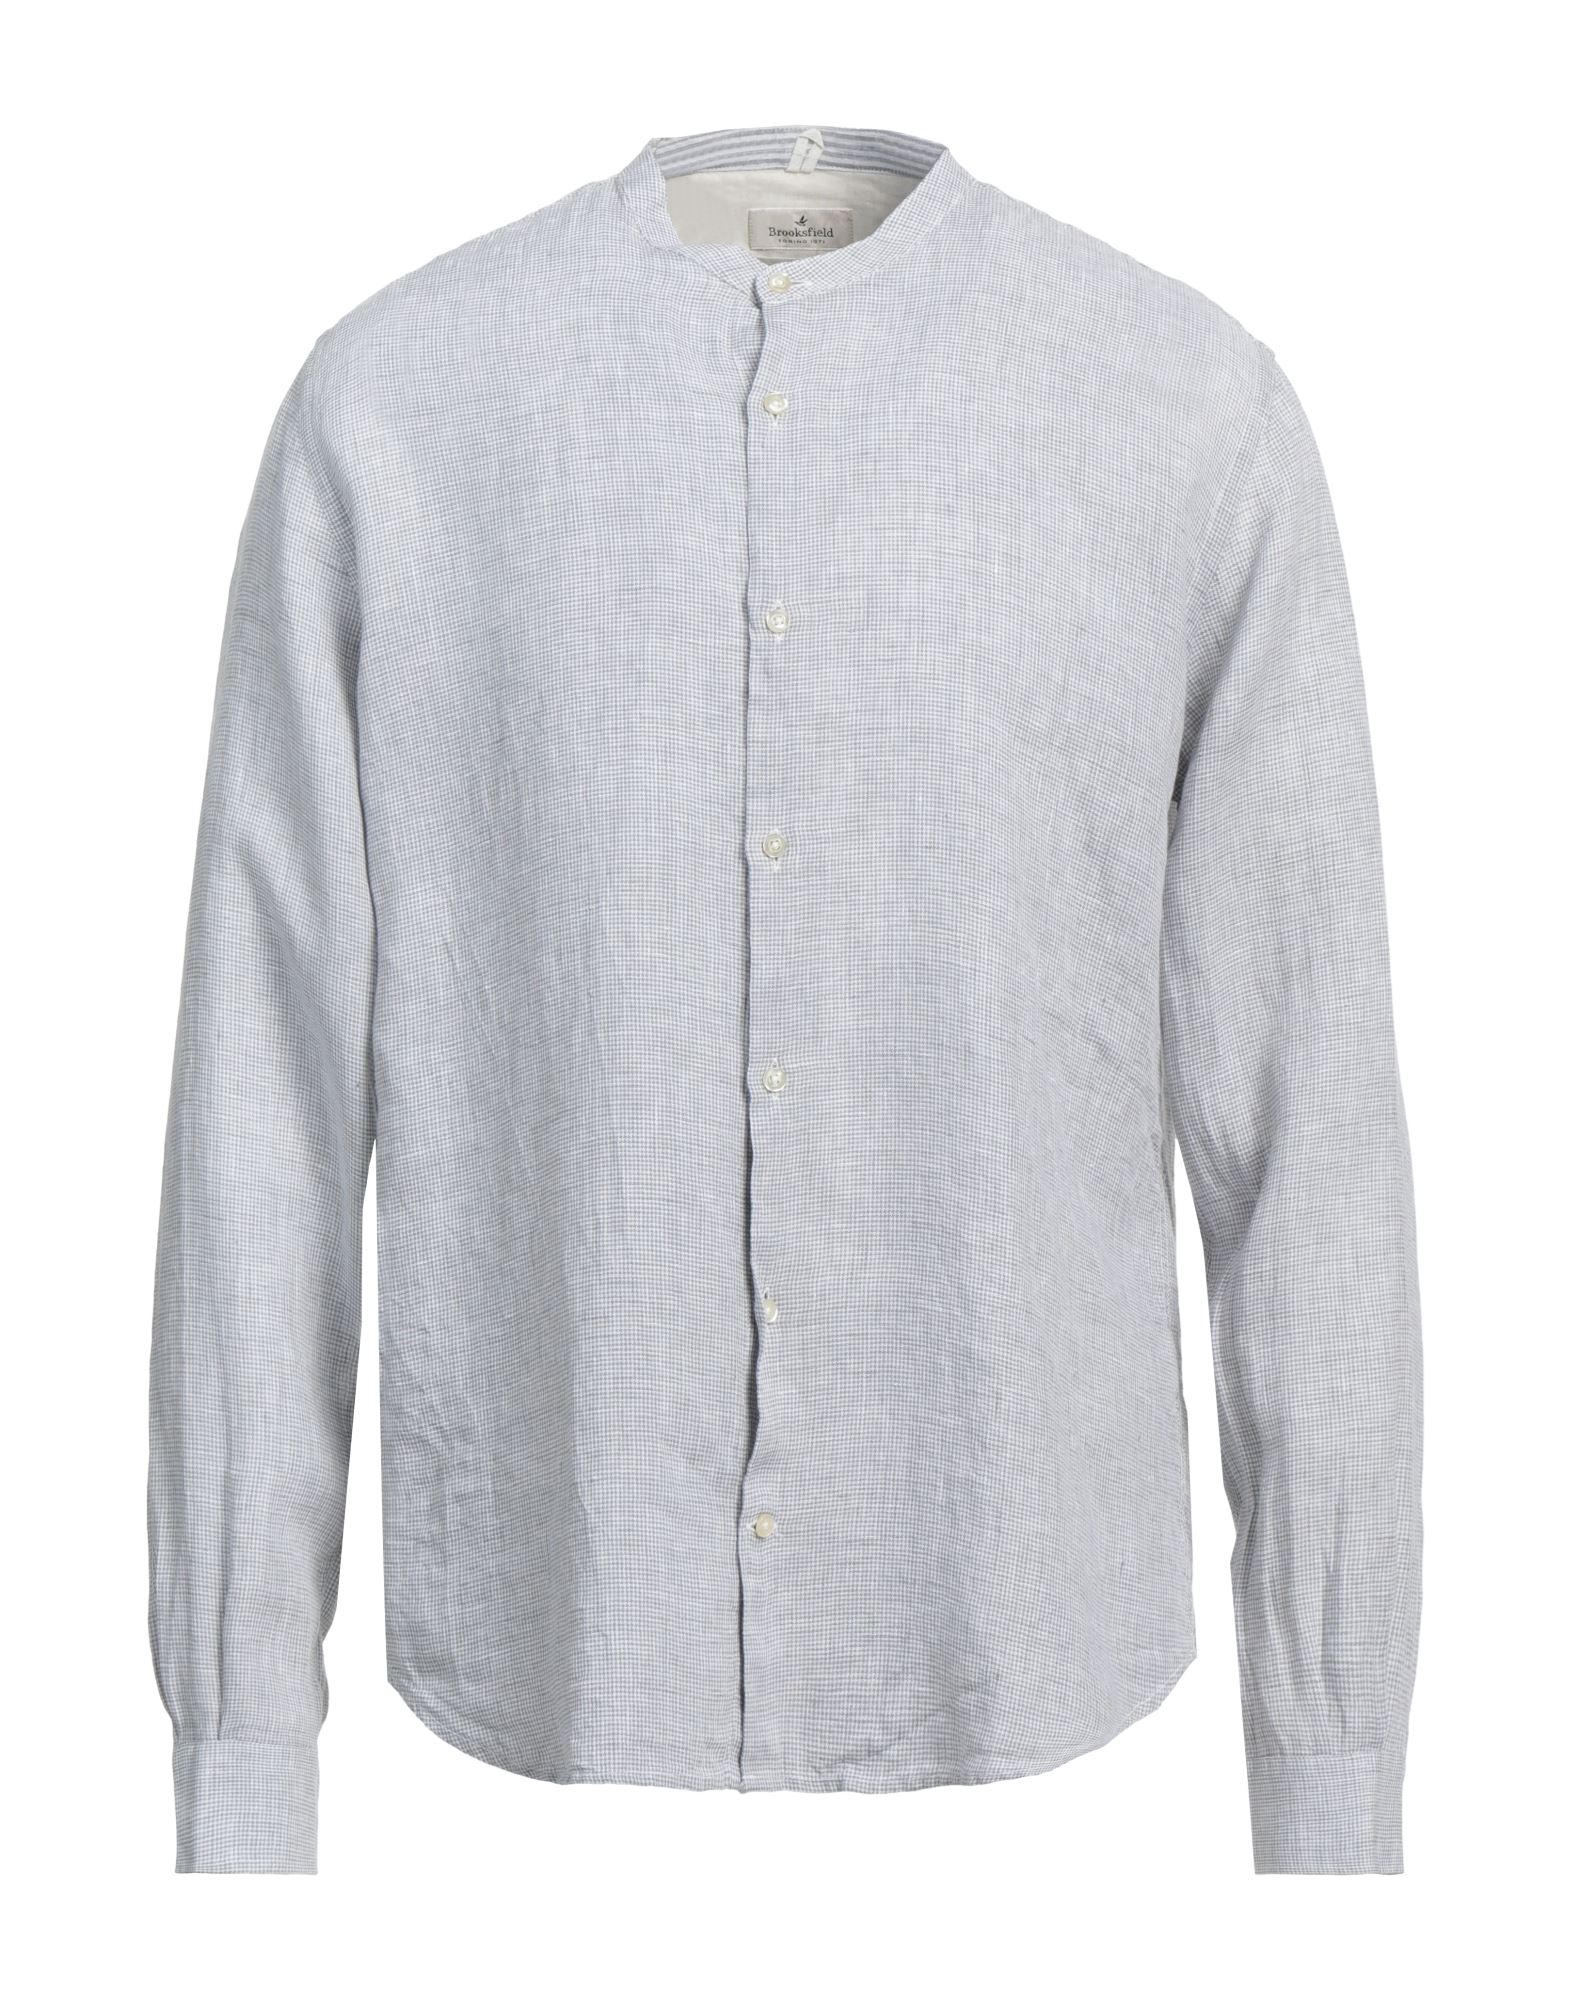 Brooksfield Man Shirt Light Grey Size 16 Linen